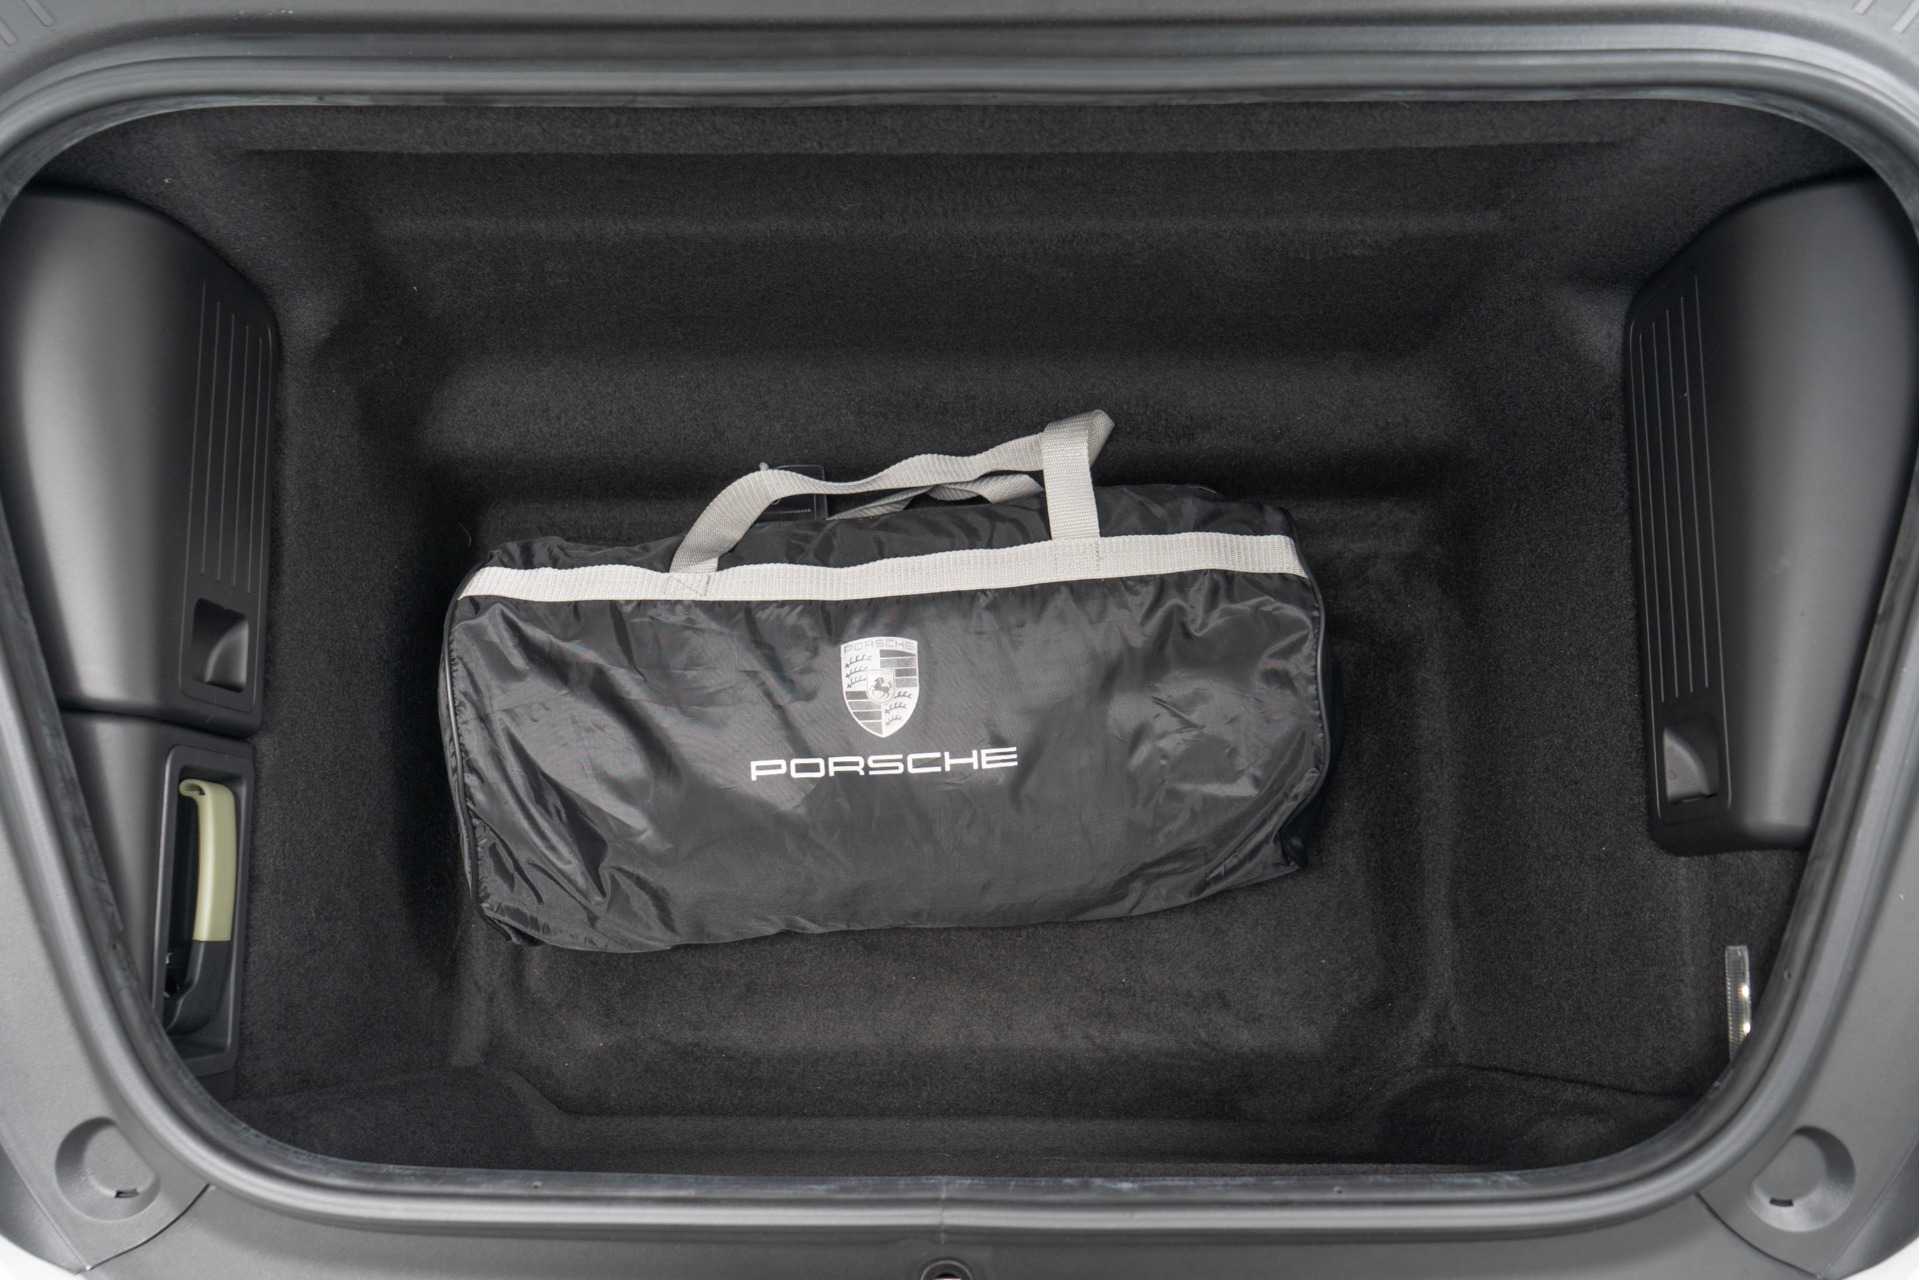 19V69 ITALIA Vintage 29 Expandable Spinner Suitcase (Bianco White